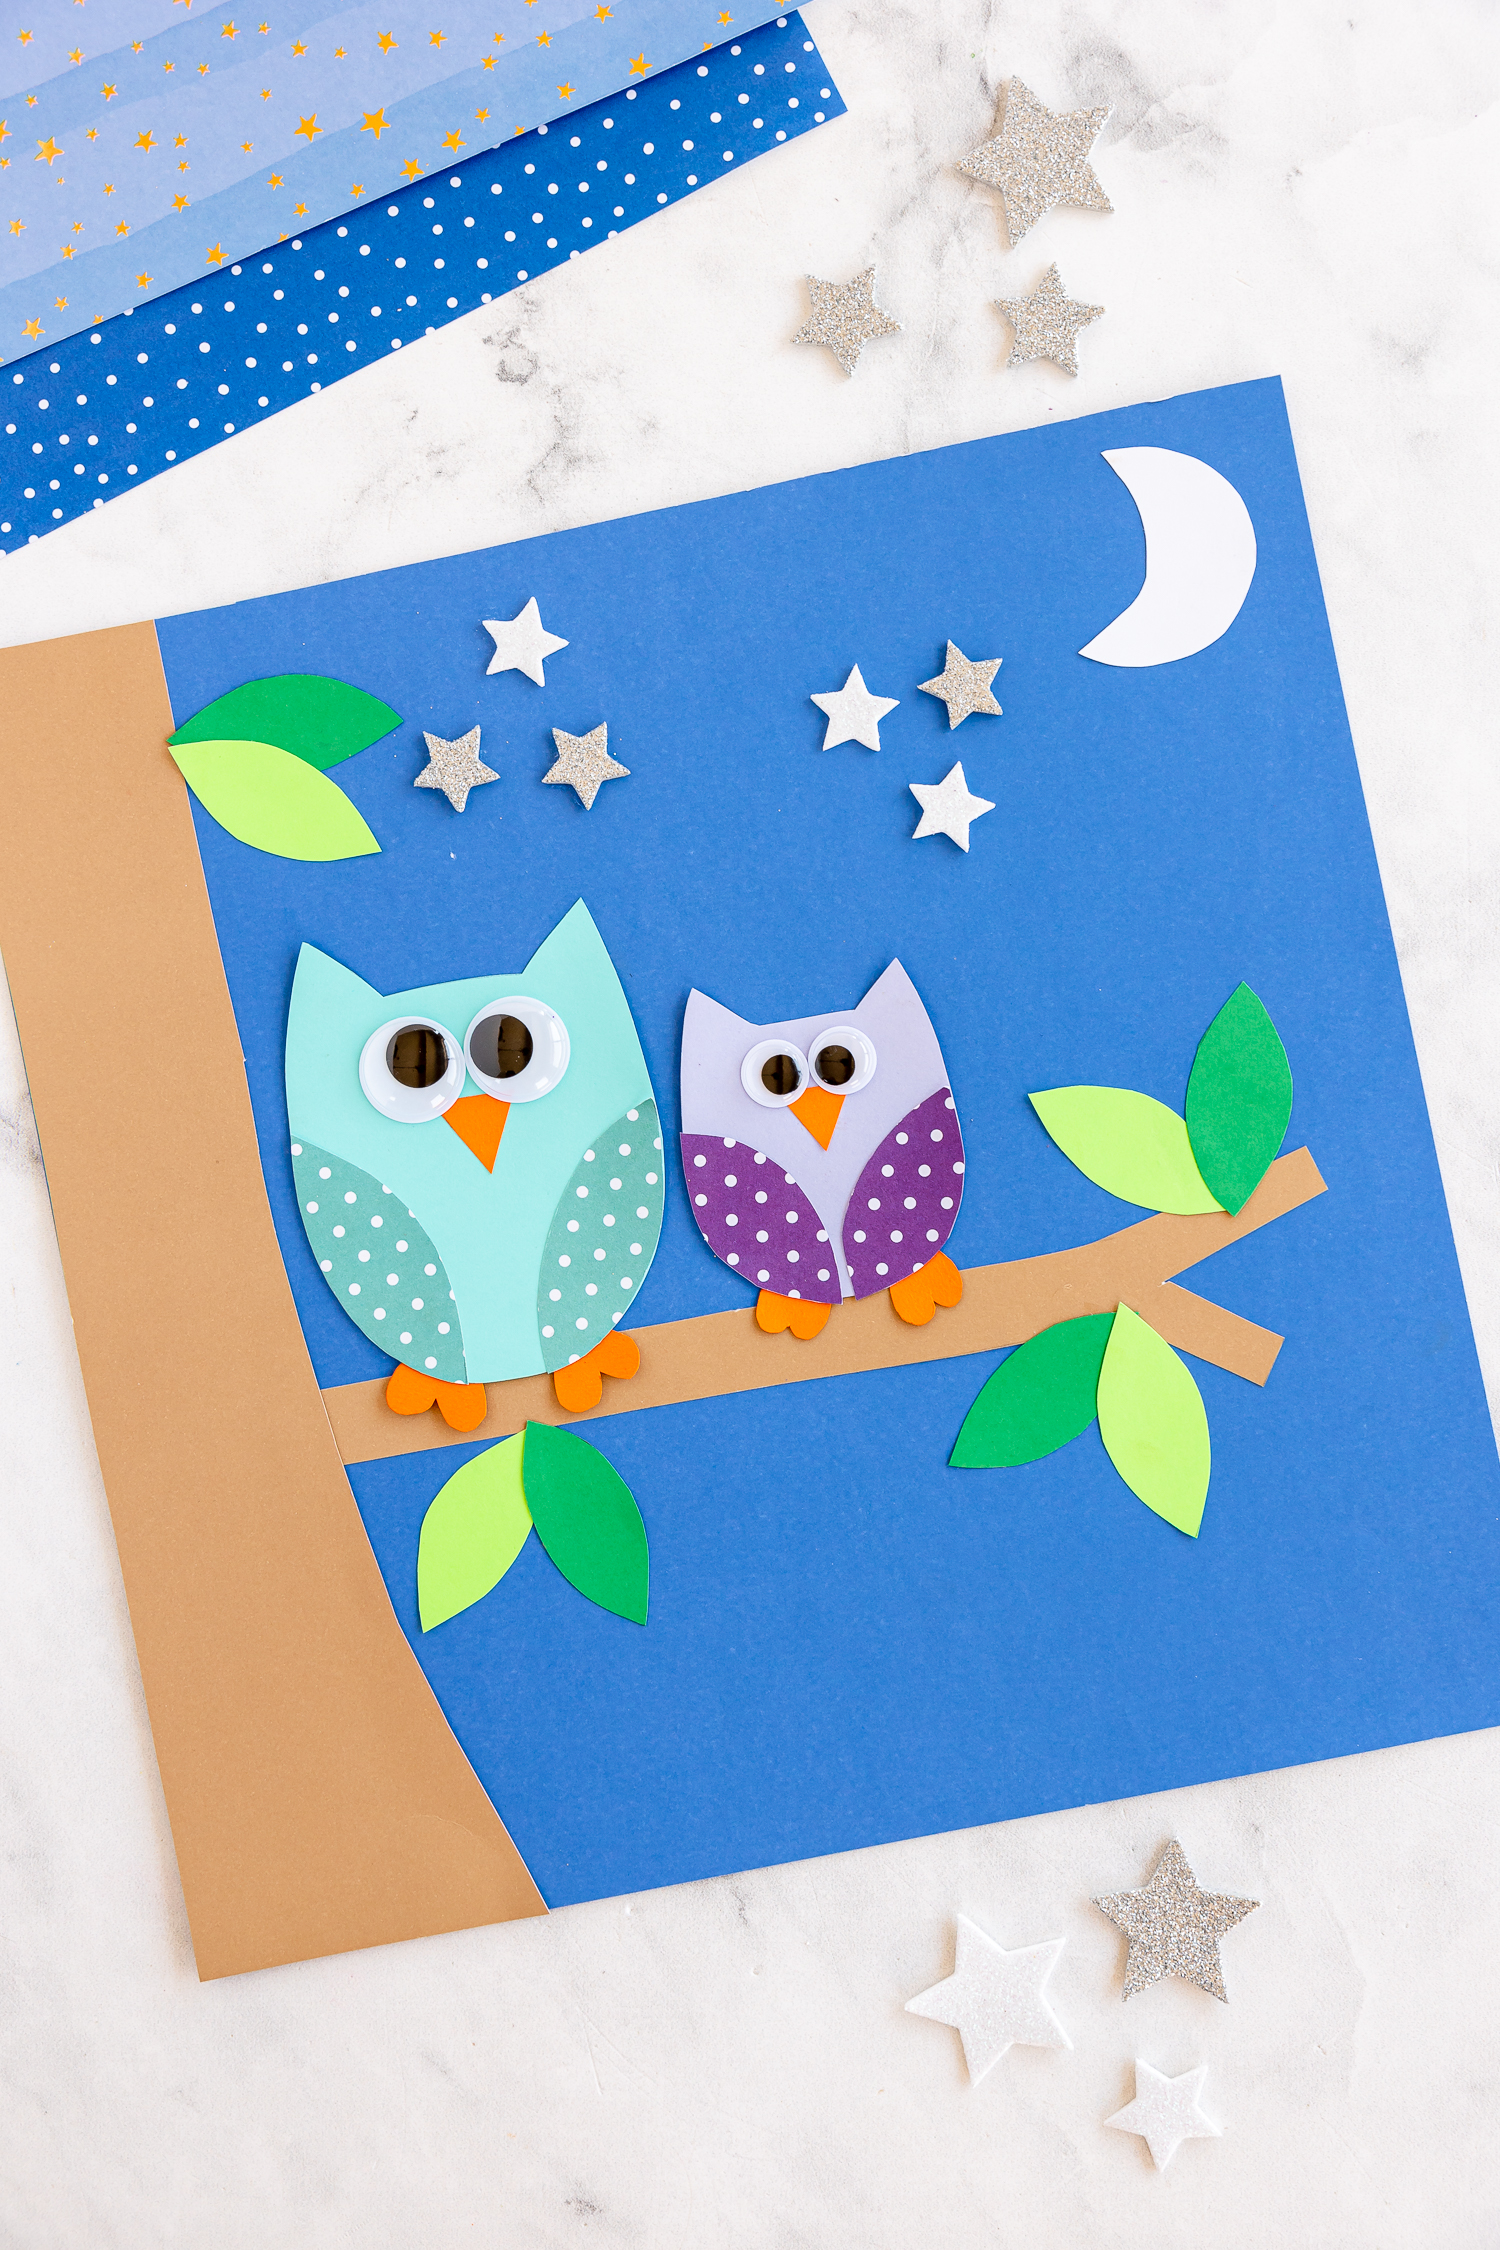 Paper Owl Craft